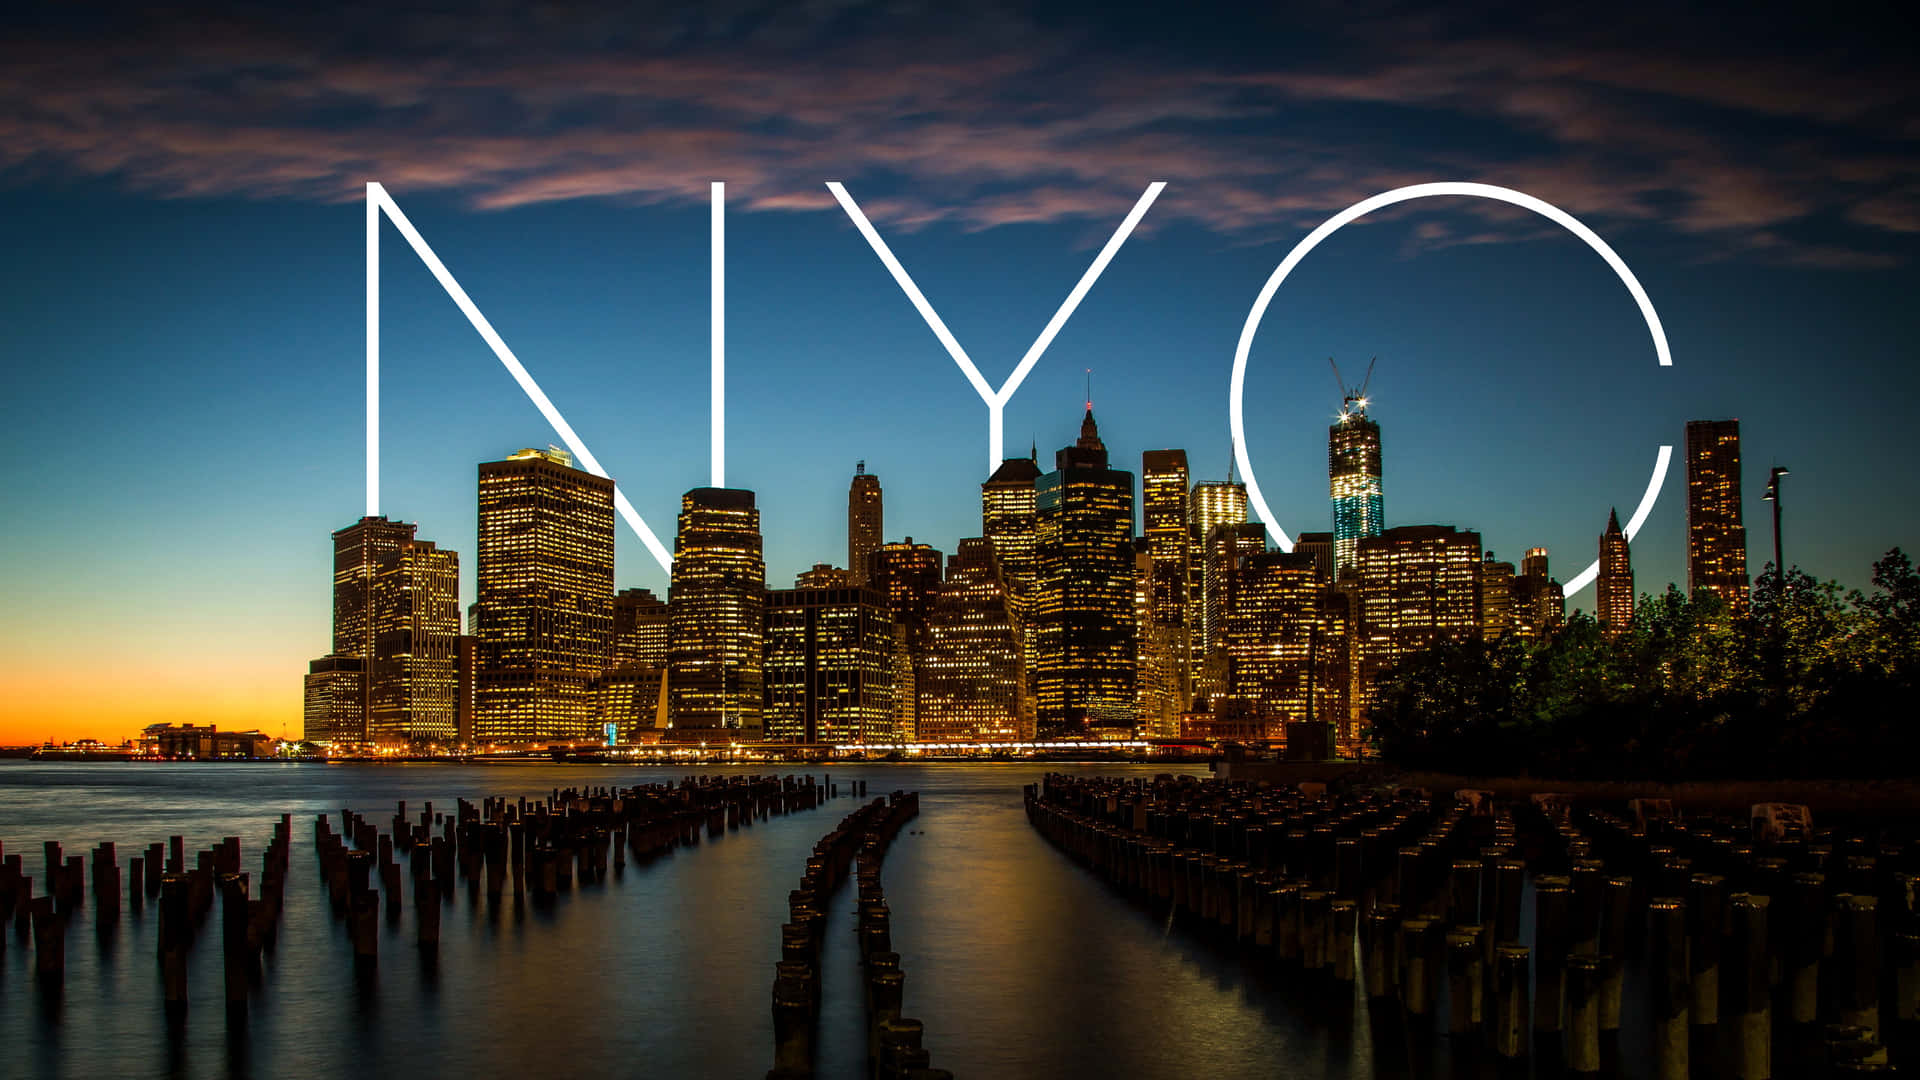 Et skyline af den ikoniske by New York. Wallpaper